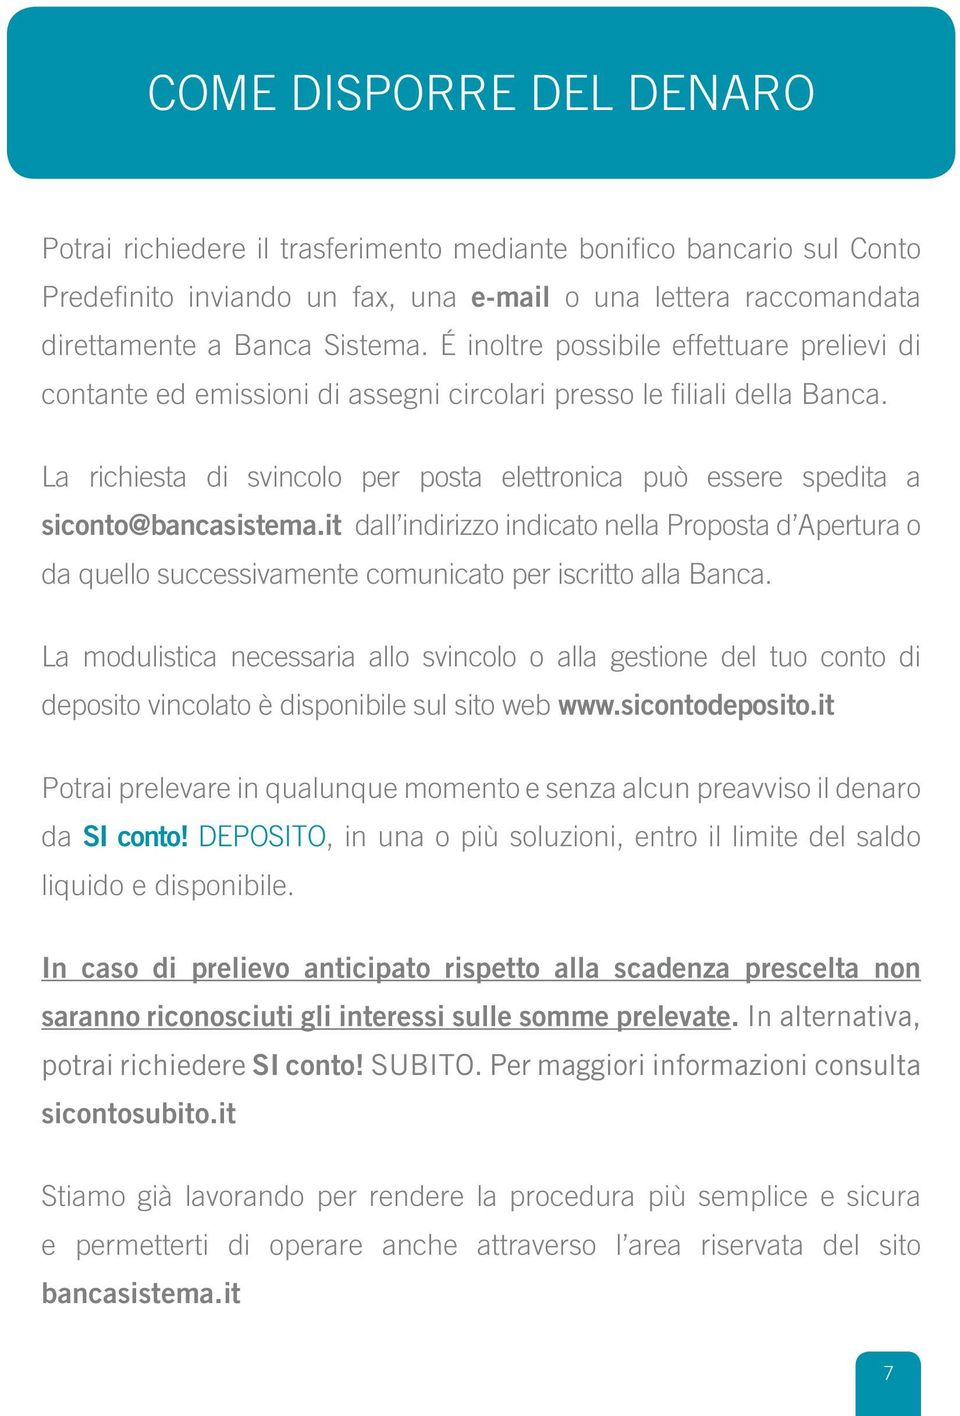 La richiesta di svincolo per posta elettronica può essere spedita a siconto@bancasistema.